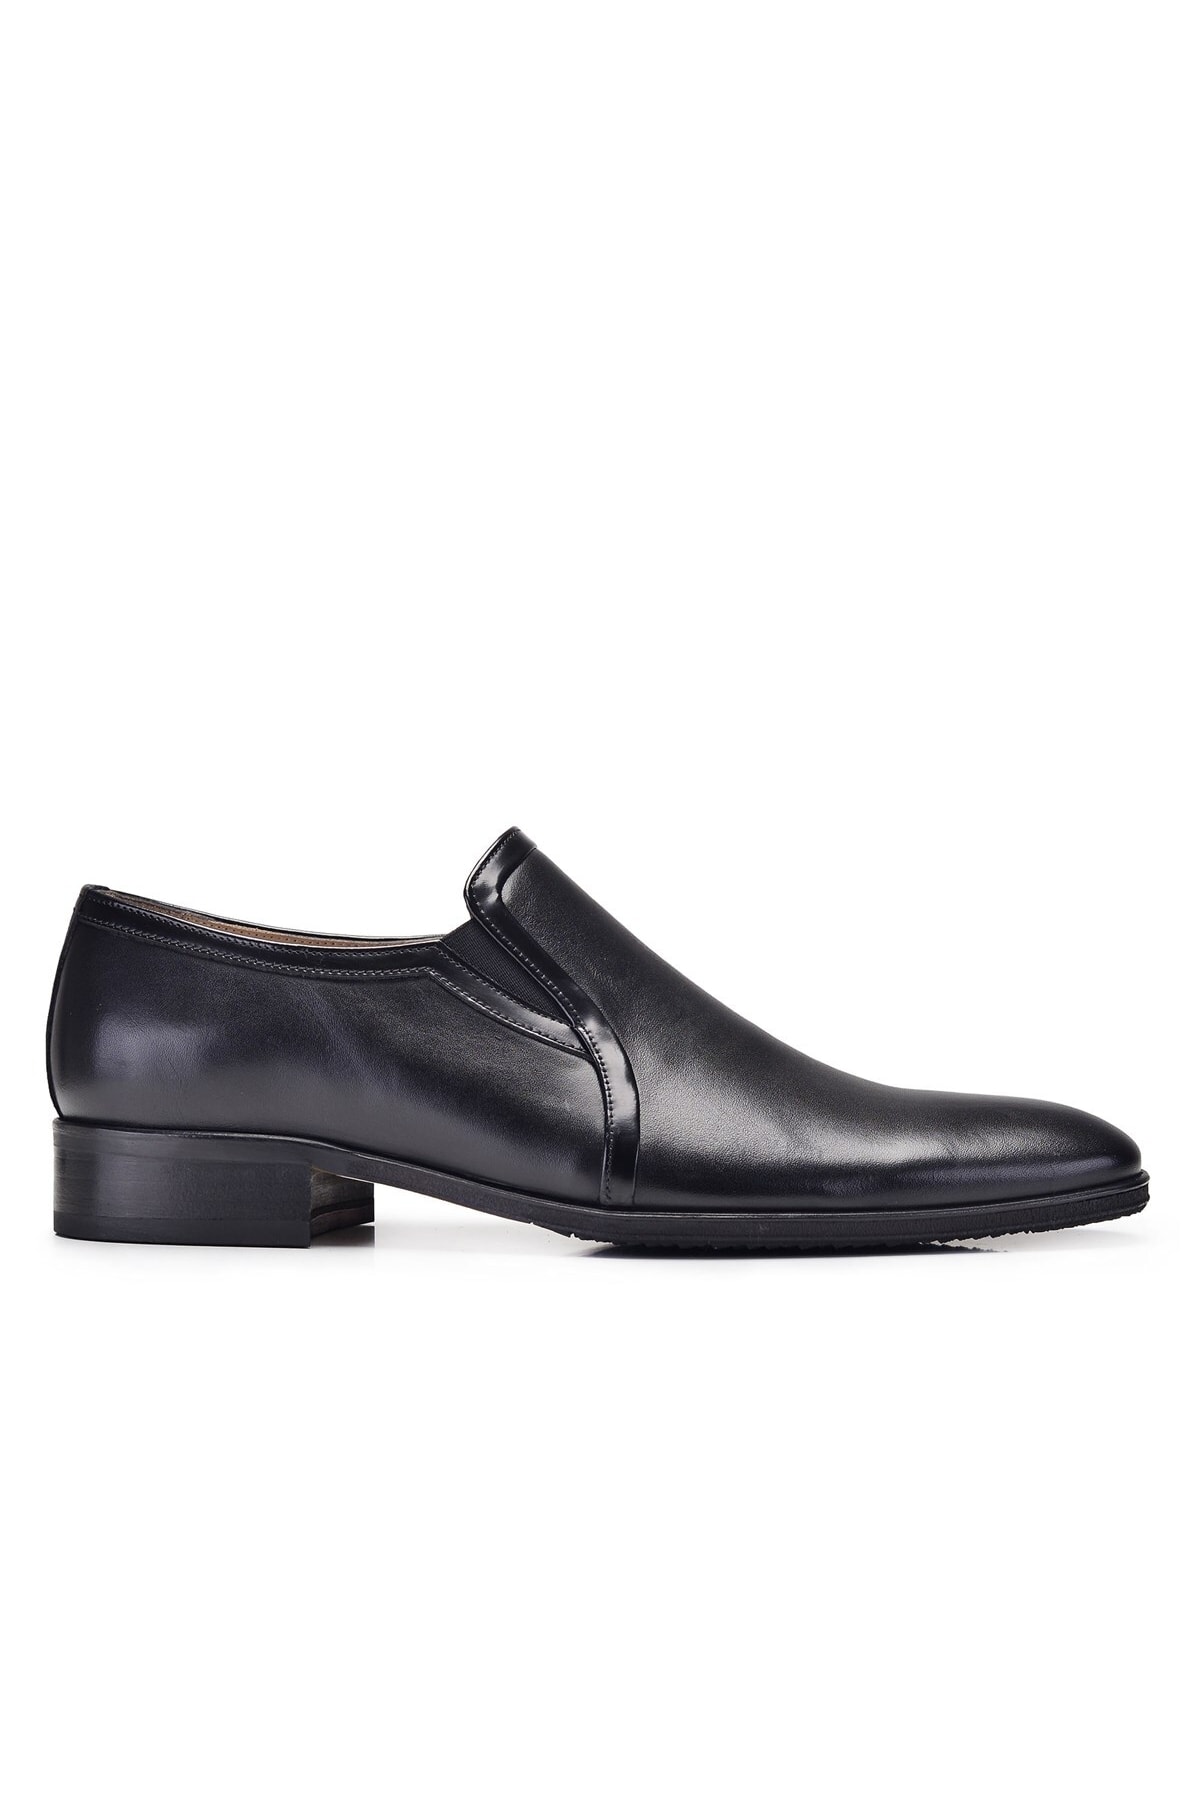 Nevzat Onay Siyah Kışlık Erkek Ayakkabı -12017-